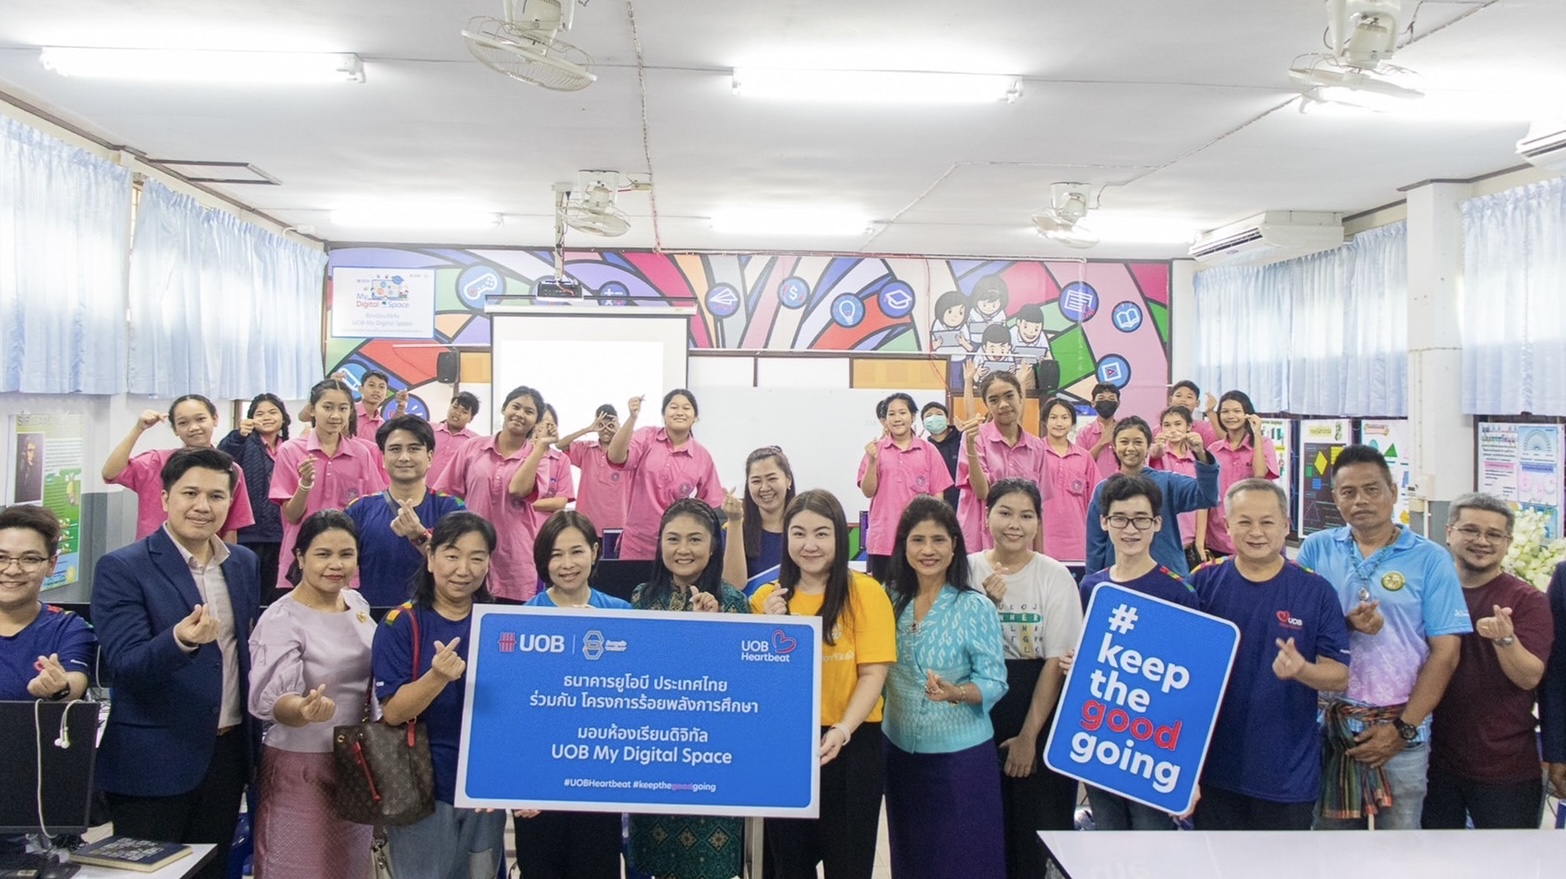 ยูโอบี ประเทศไทย ยกระดับการส่งเสริมความรู้ด้านดิจิทัล และทักษะที่จำเป็นสำหรับอนาคตแก่นักเรียนไทยในพื้นที่ห่างไกล